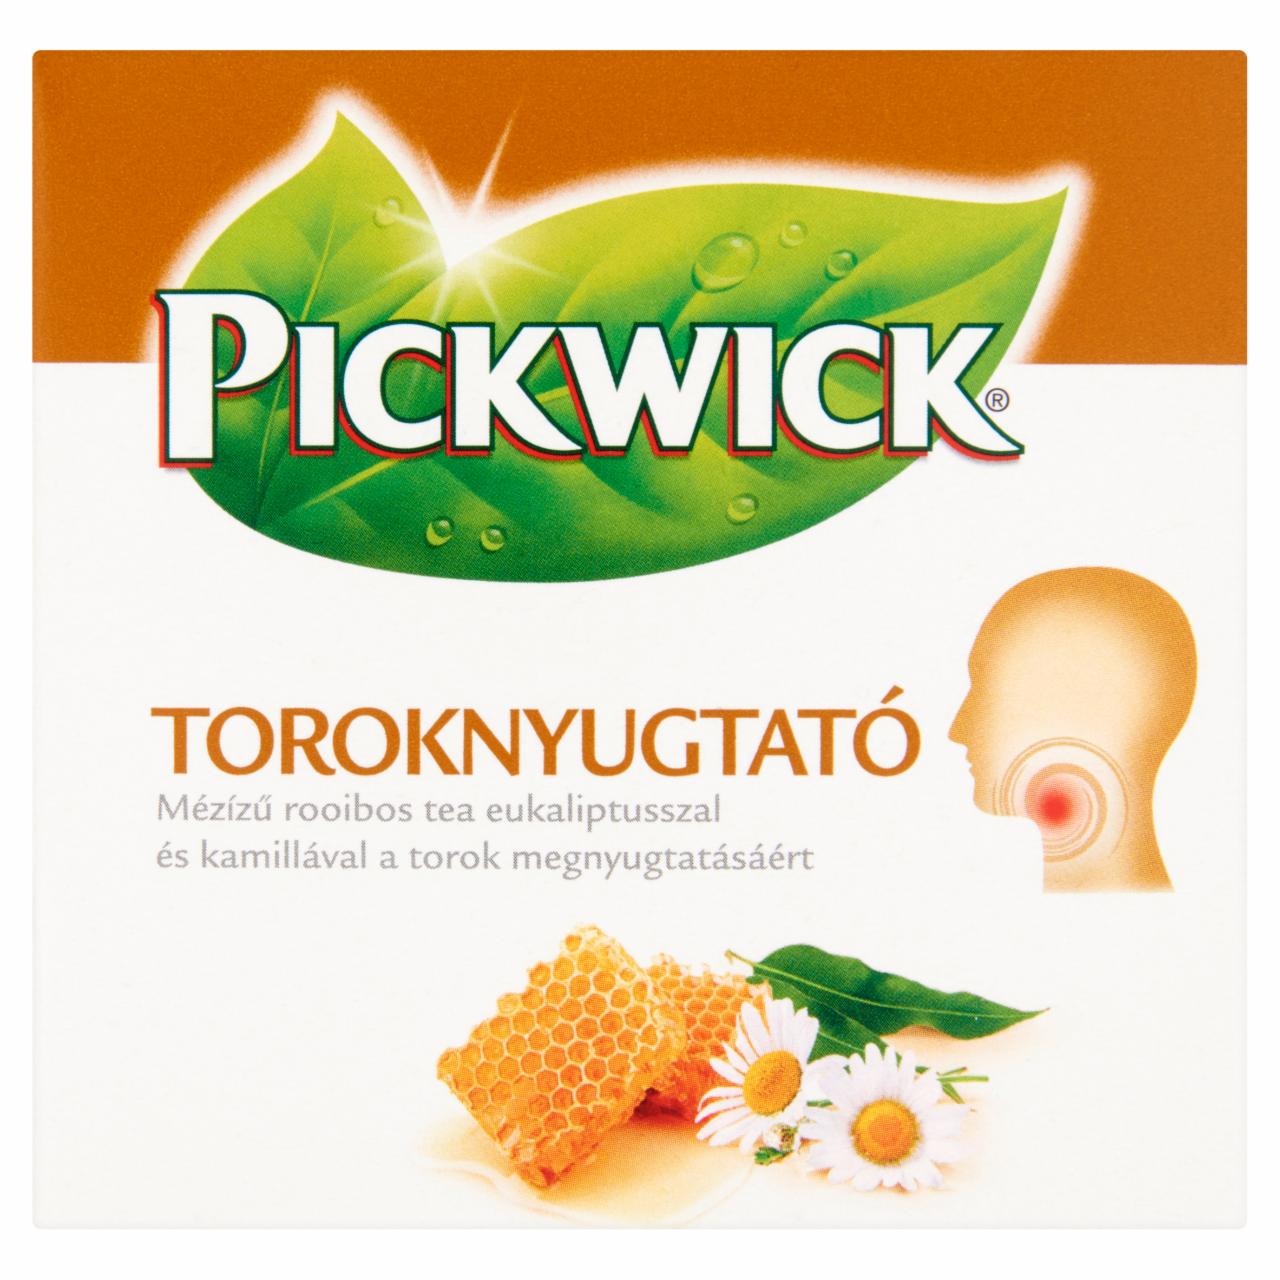 Képek - Pickwick Toroknyugtató mézízű rooibos tea eukaliptusszal és kamillával 10 filter 15 g